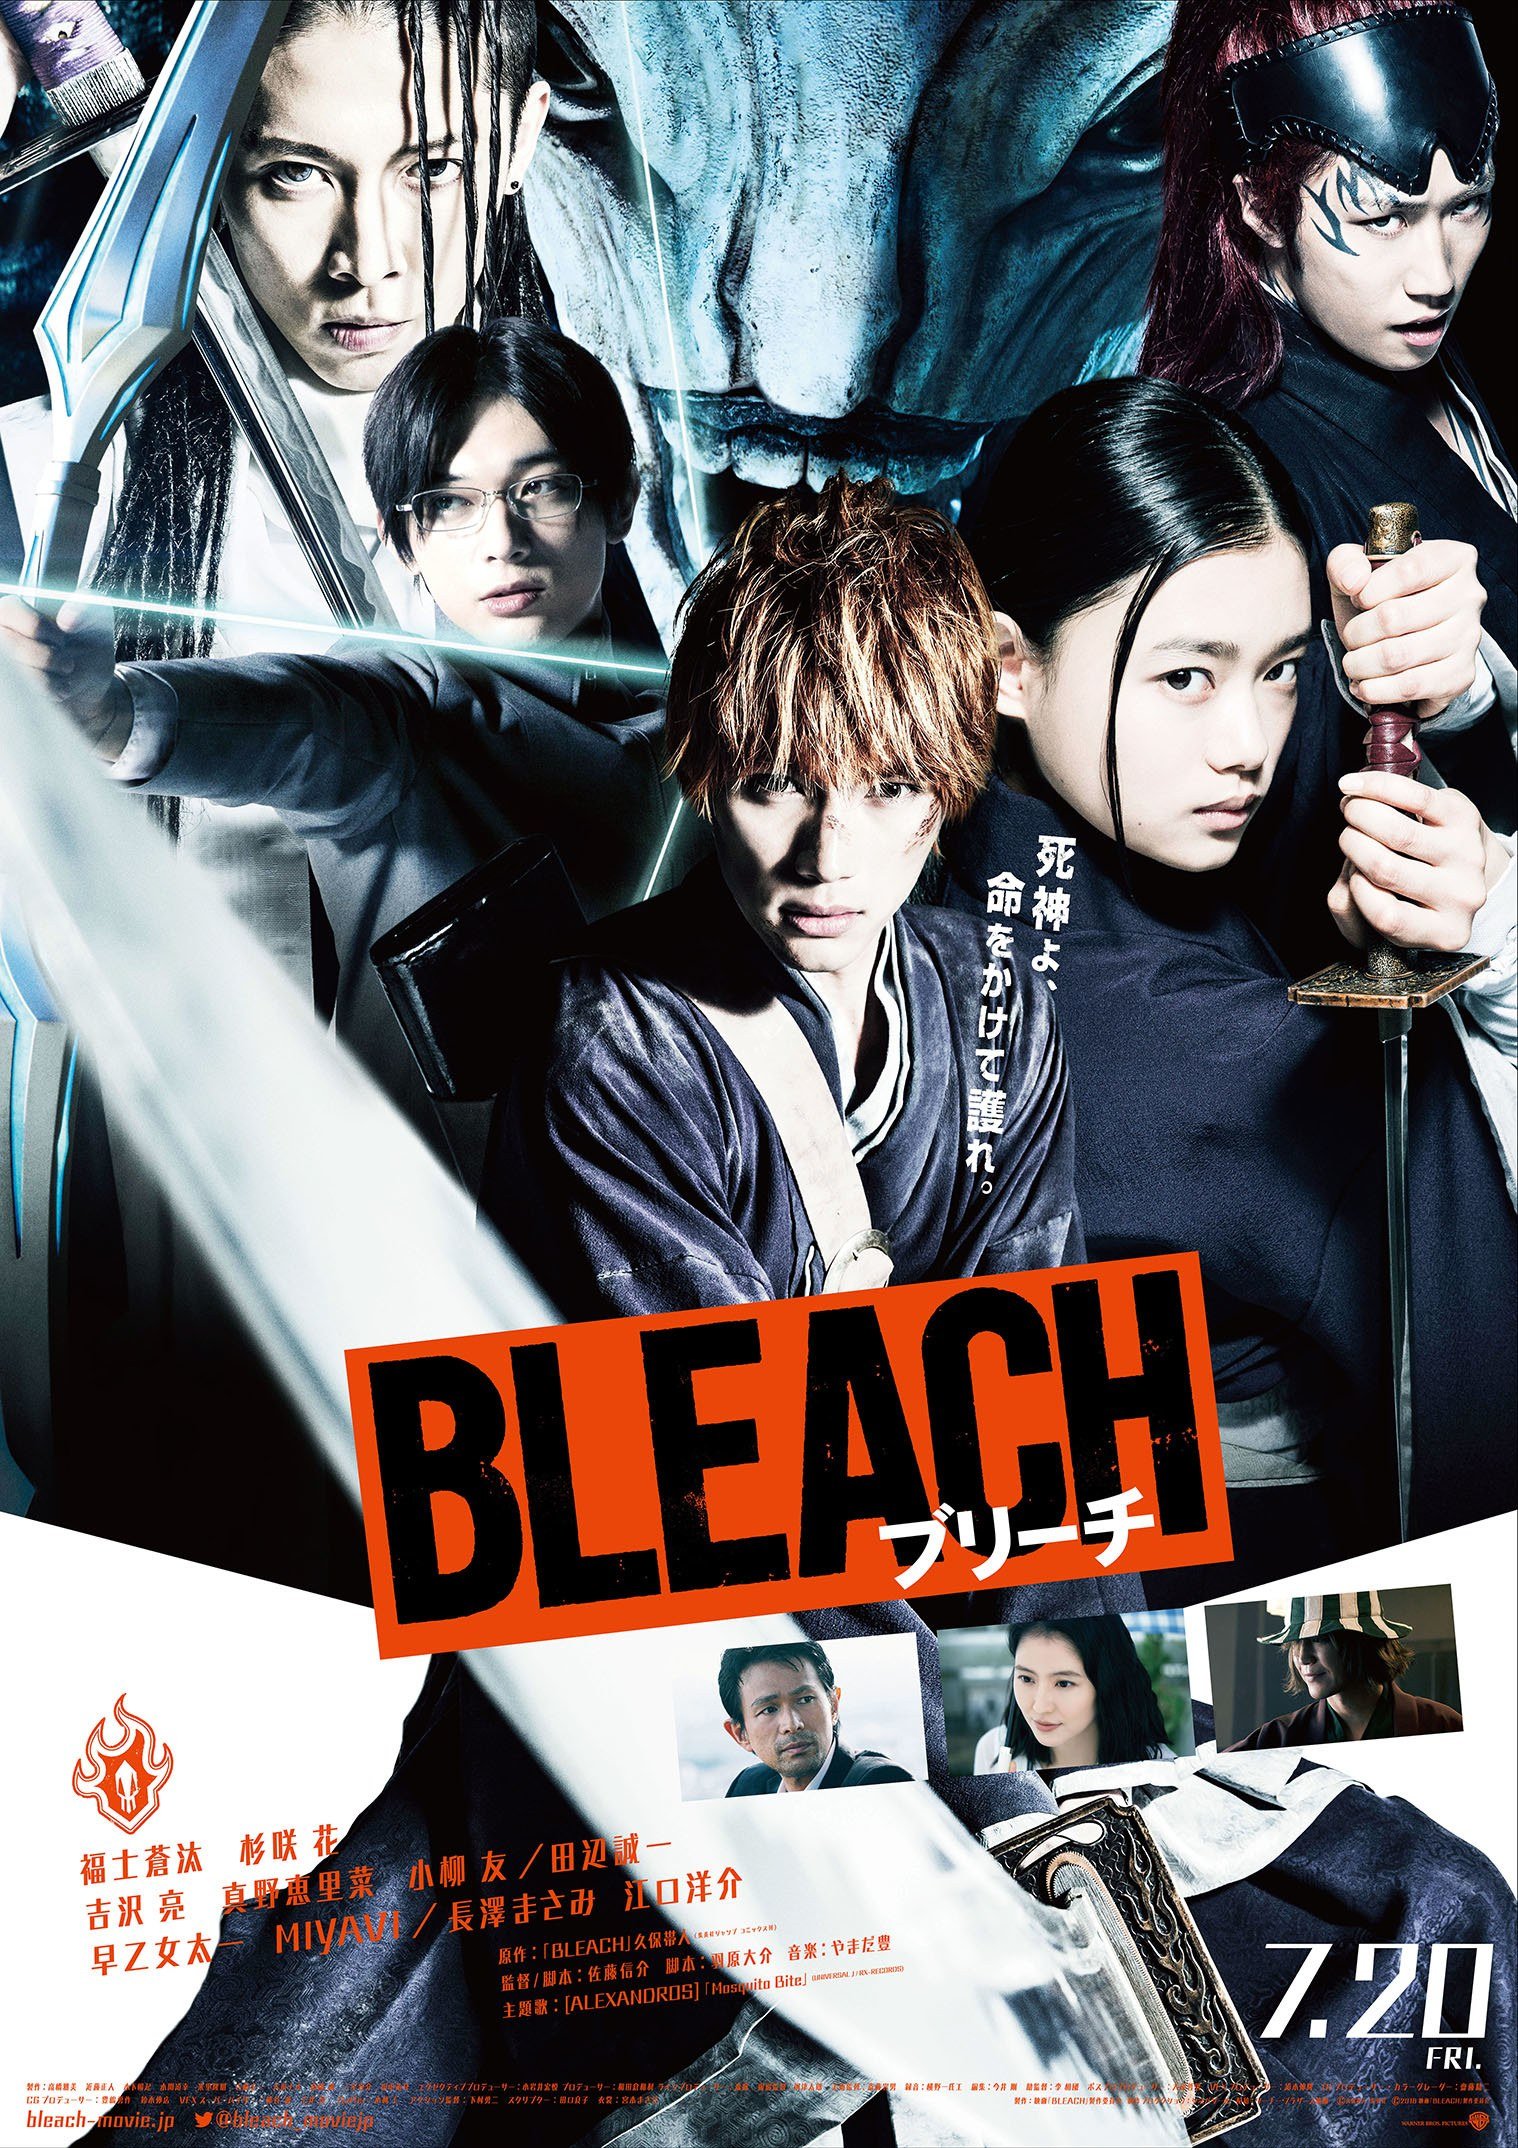 Bleach (1ª Temporada) - 5 de Outubro de 2004